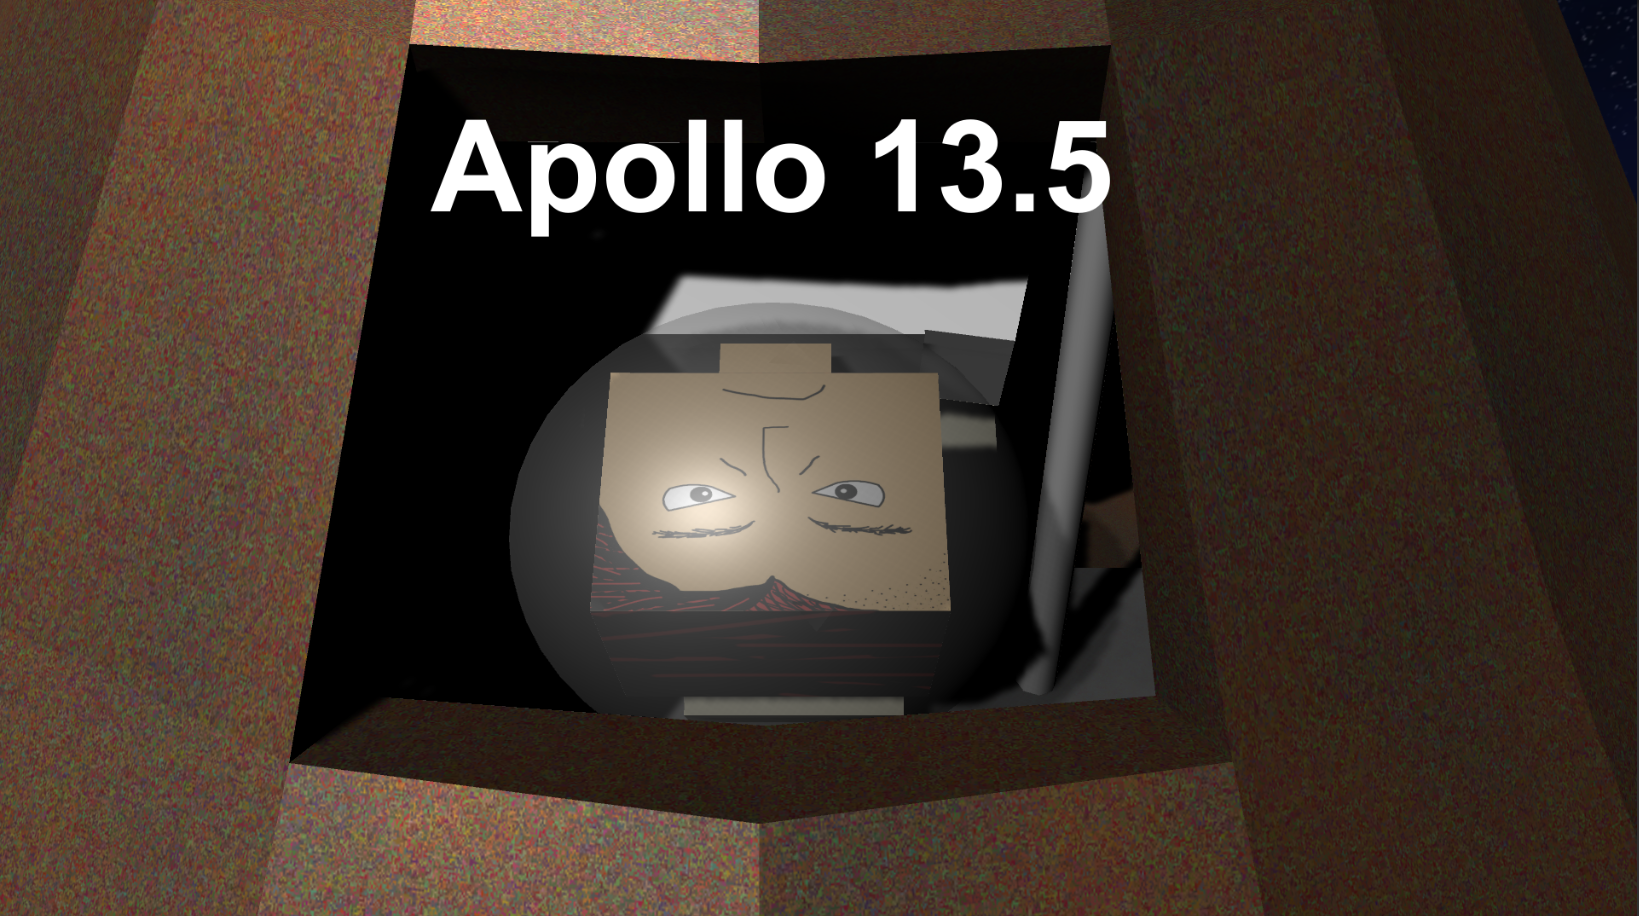 Apollo 13.5